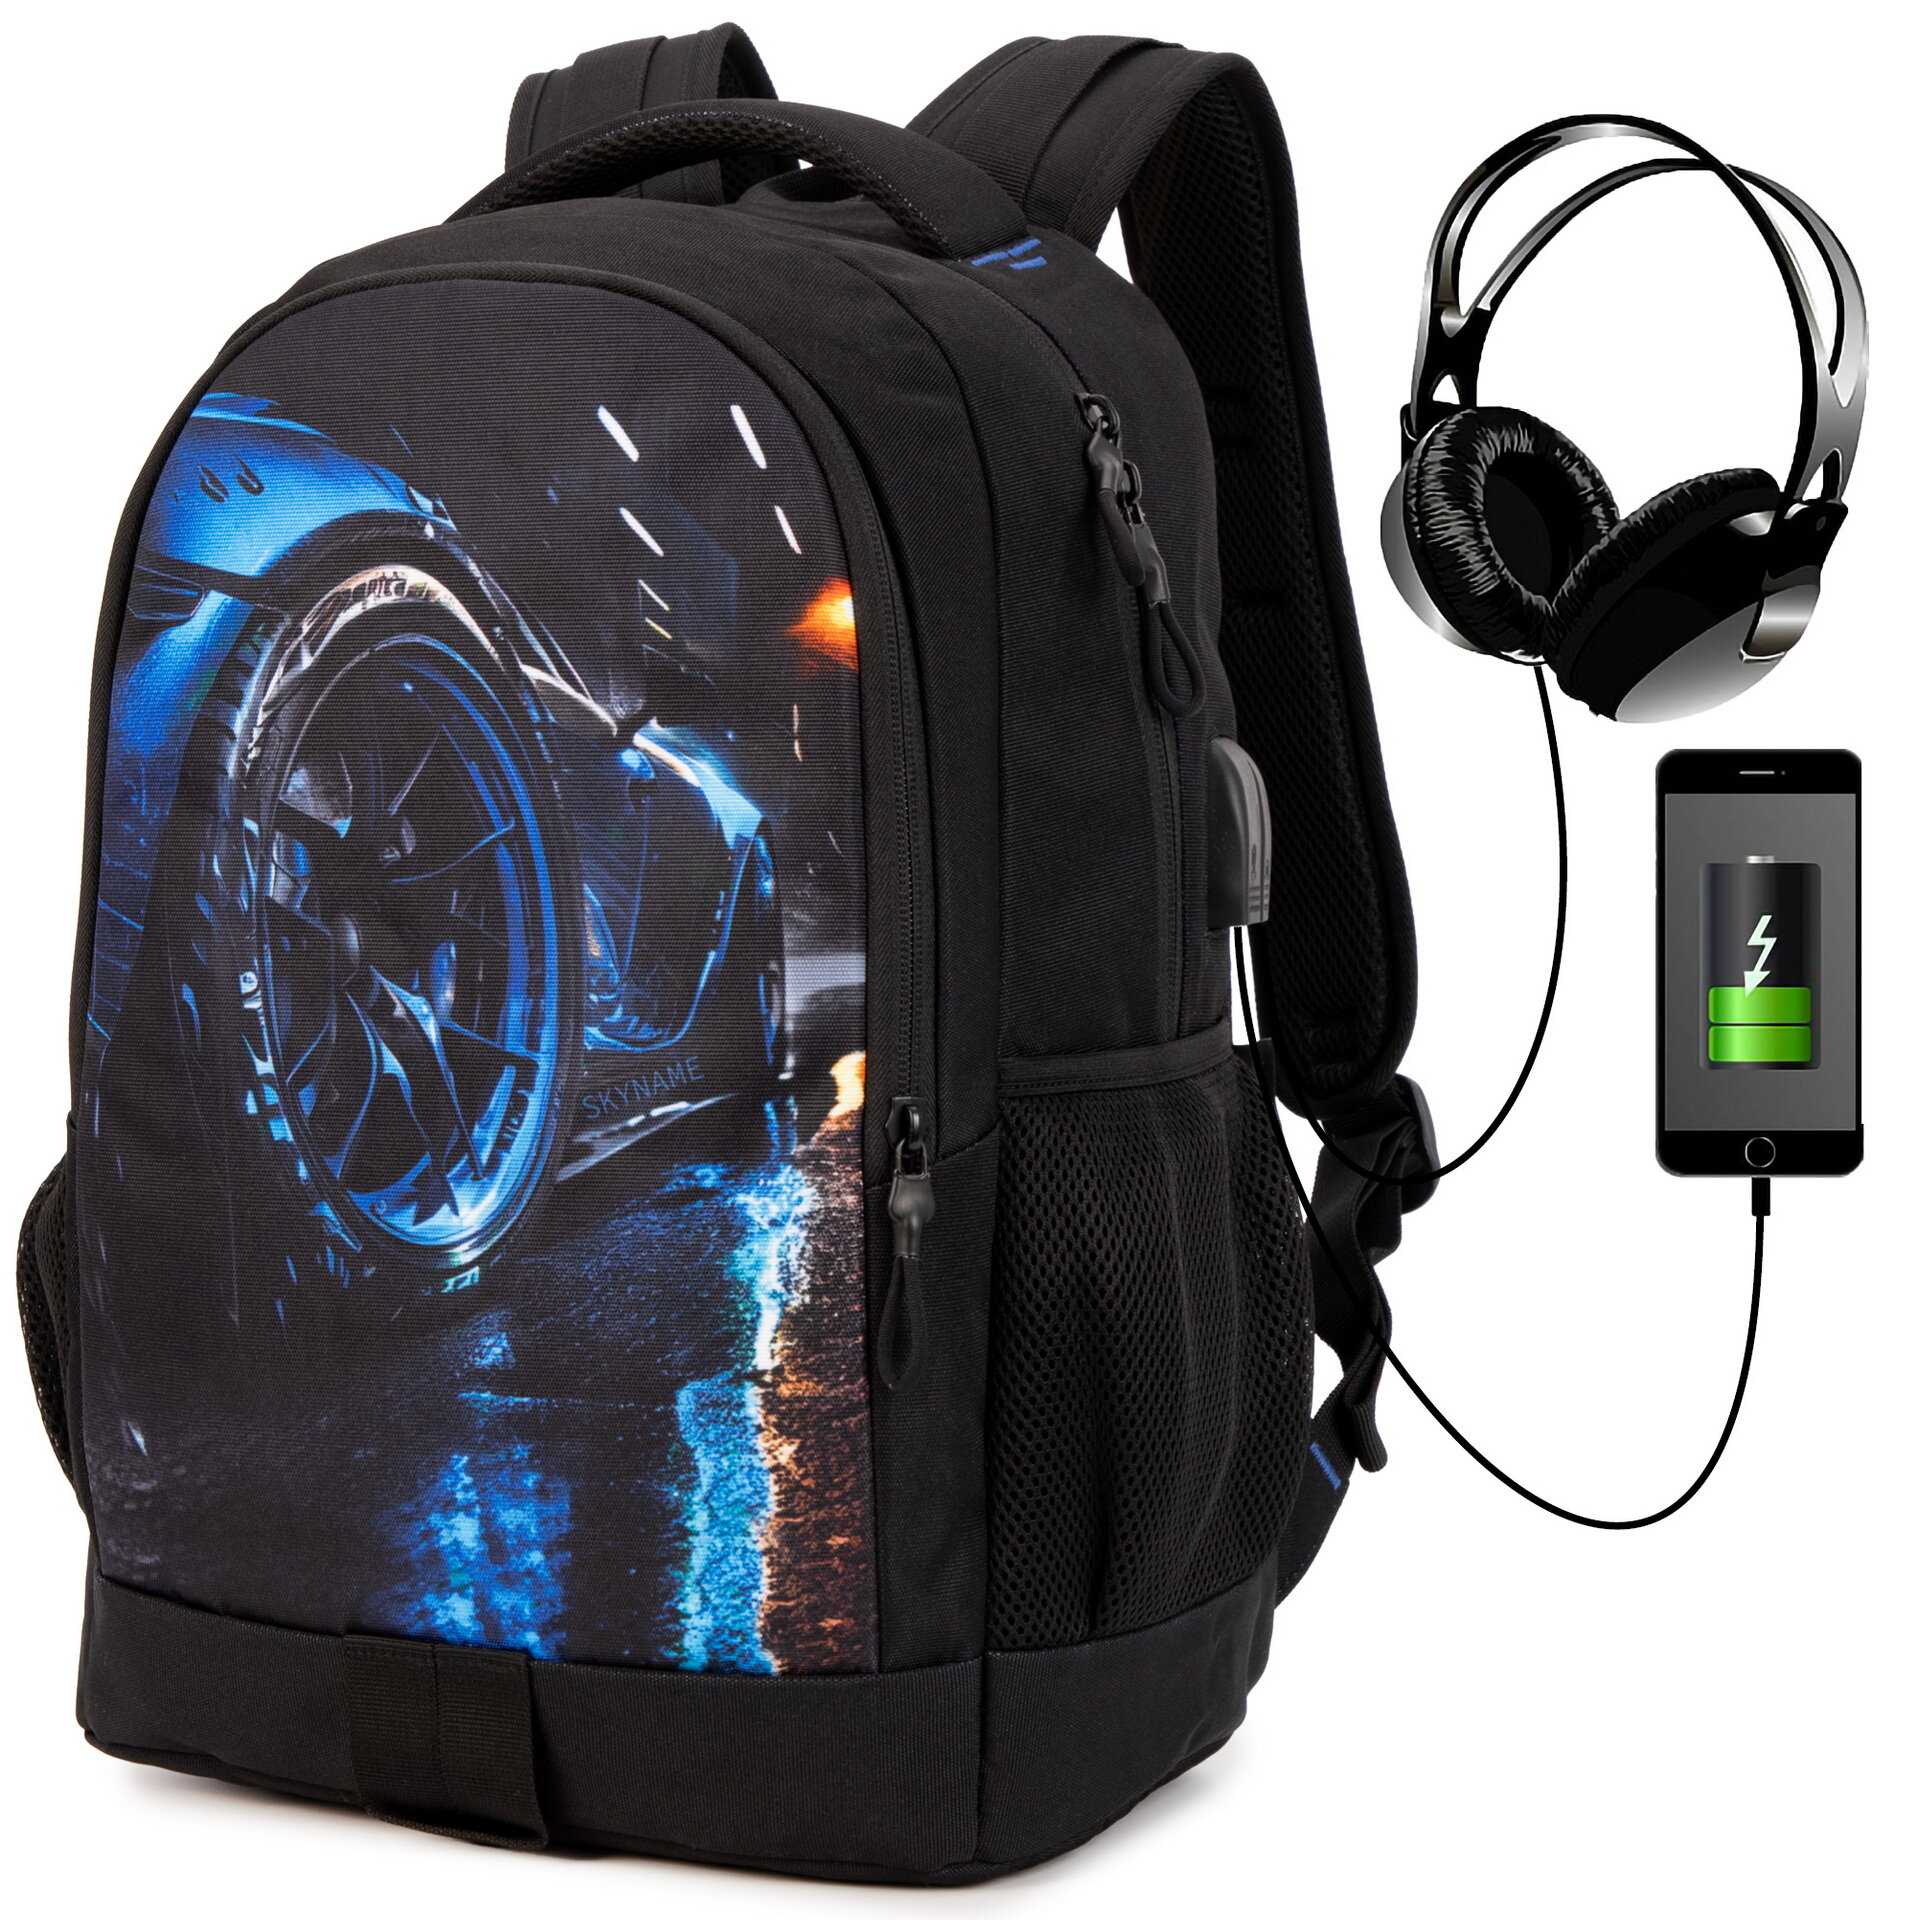 Рюкзак школьный для мальчика подростка 22.5 л, А4, мужской с анатомической спинкой для ноутбука, SkyName (СкайНейм), размер 41х29х19 см со слотом USB и входом для наушников